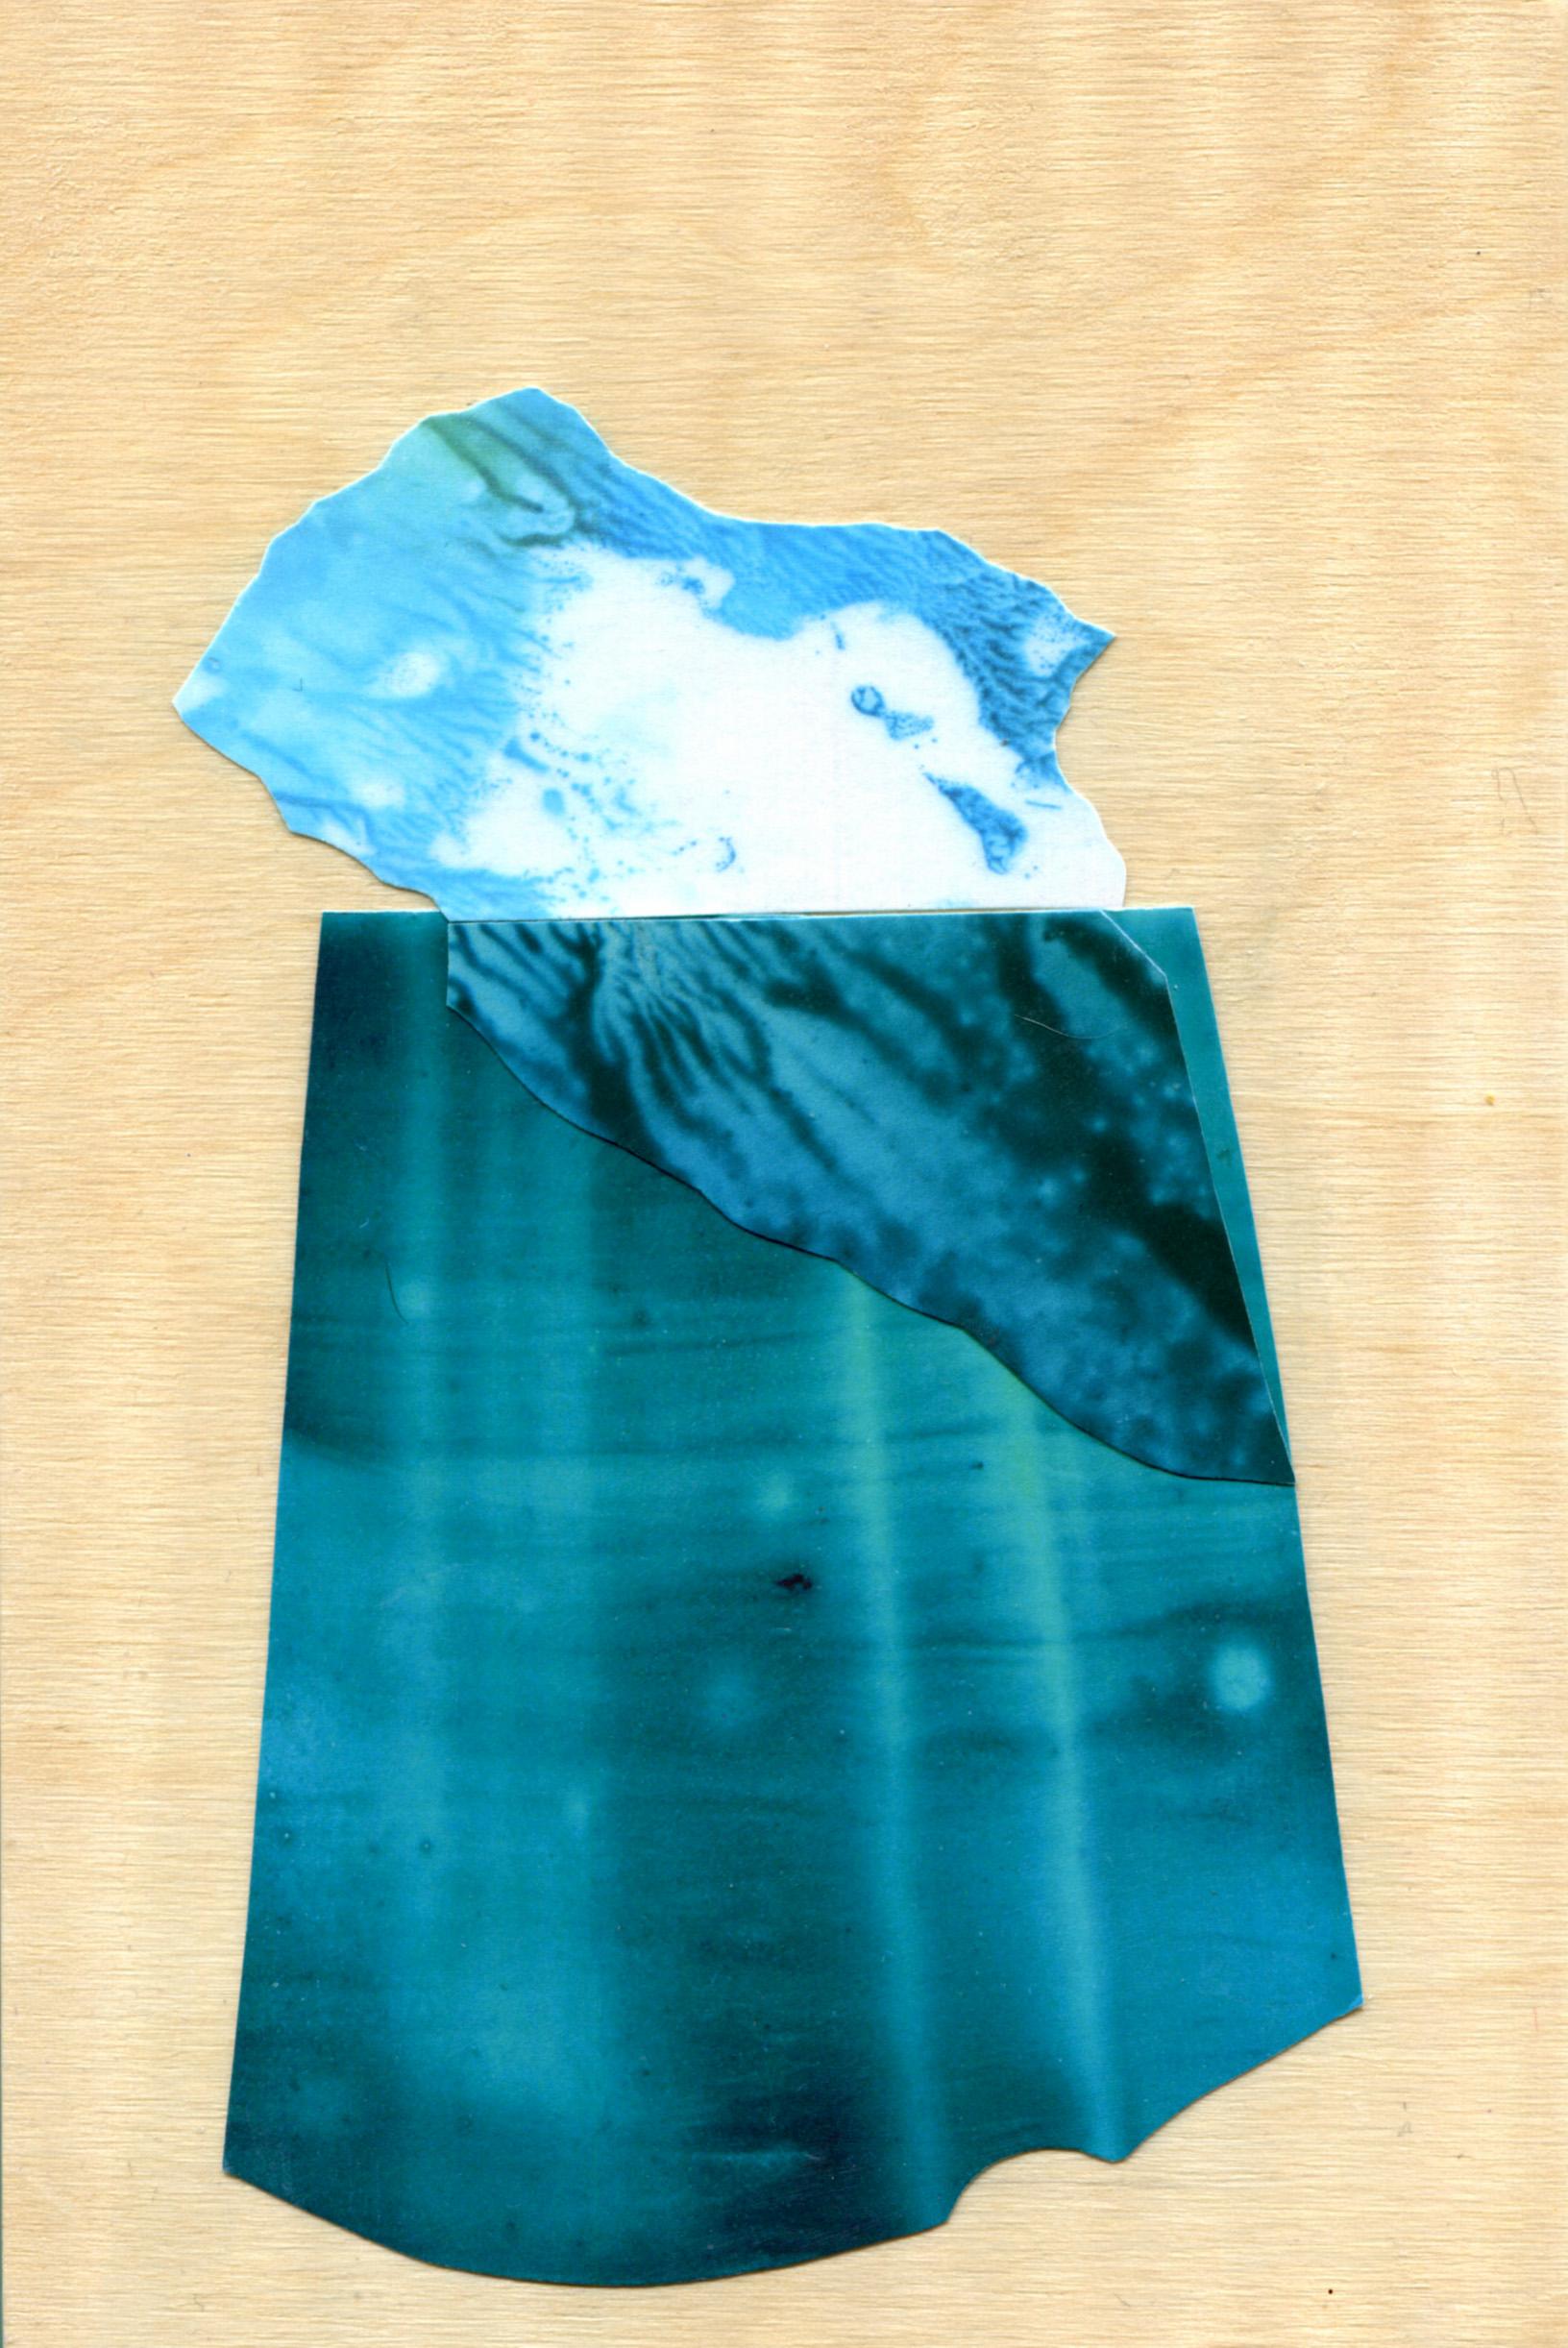 Iceberg 11 - Mixed Media Art by Sarah Winkler